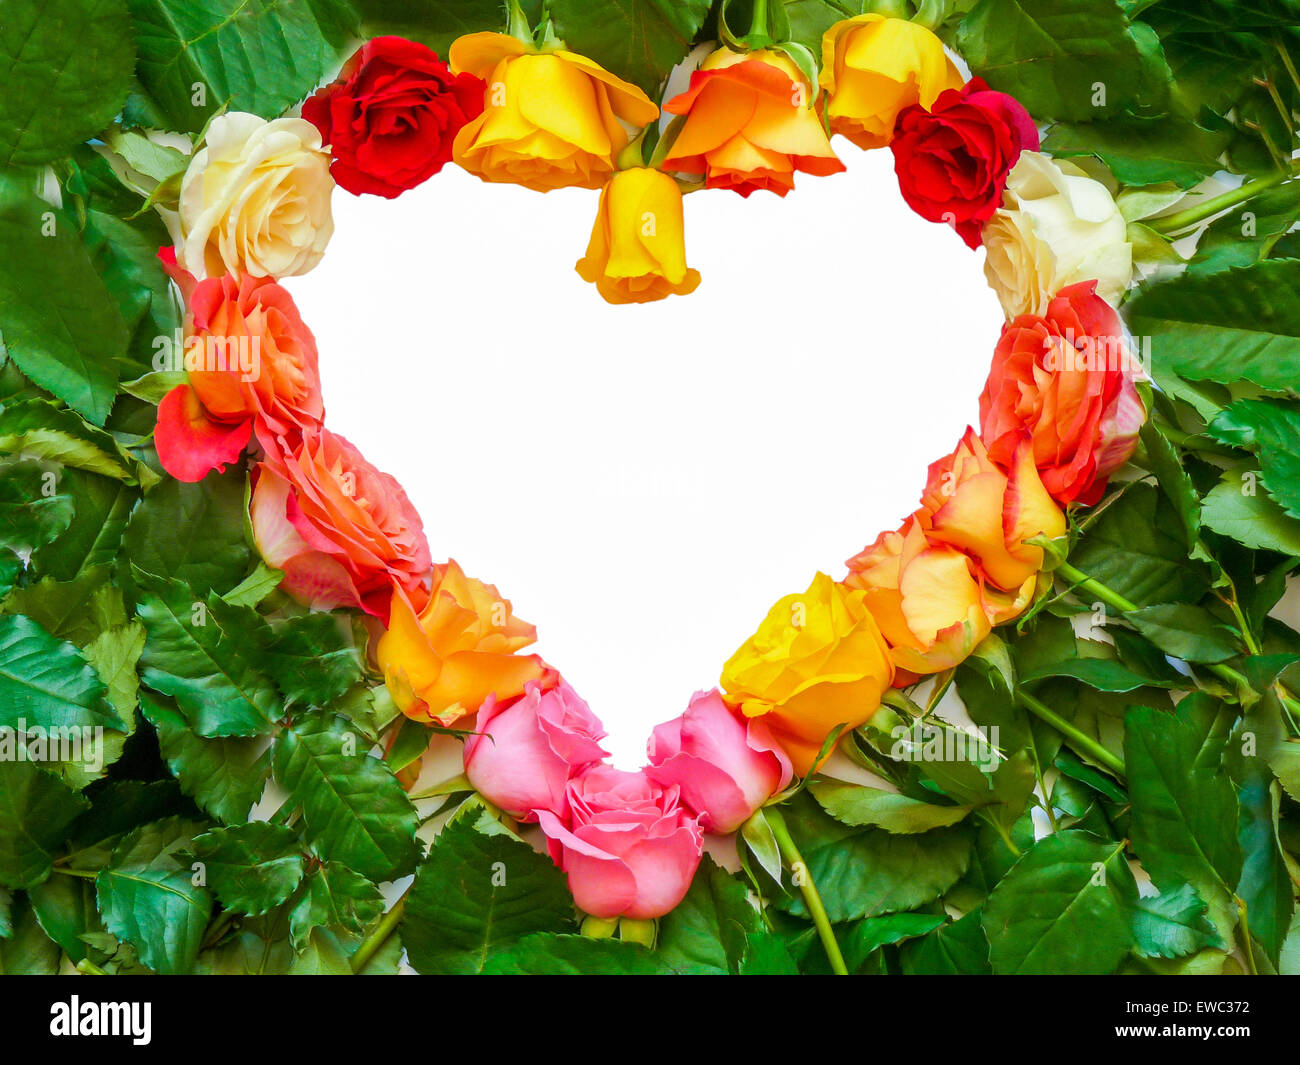 Herzsymbol von verschiedenen bunten Rosen mit grünen Blättern und weißen Leerraum für text Stockfoto